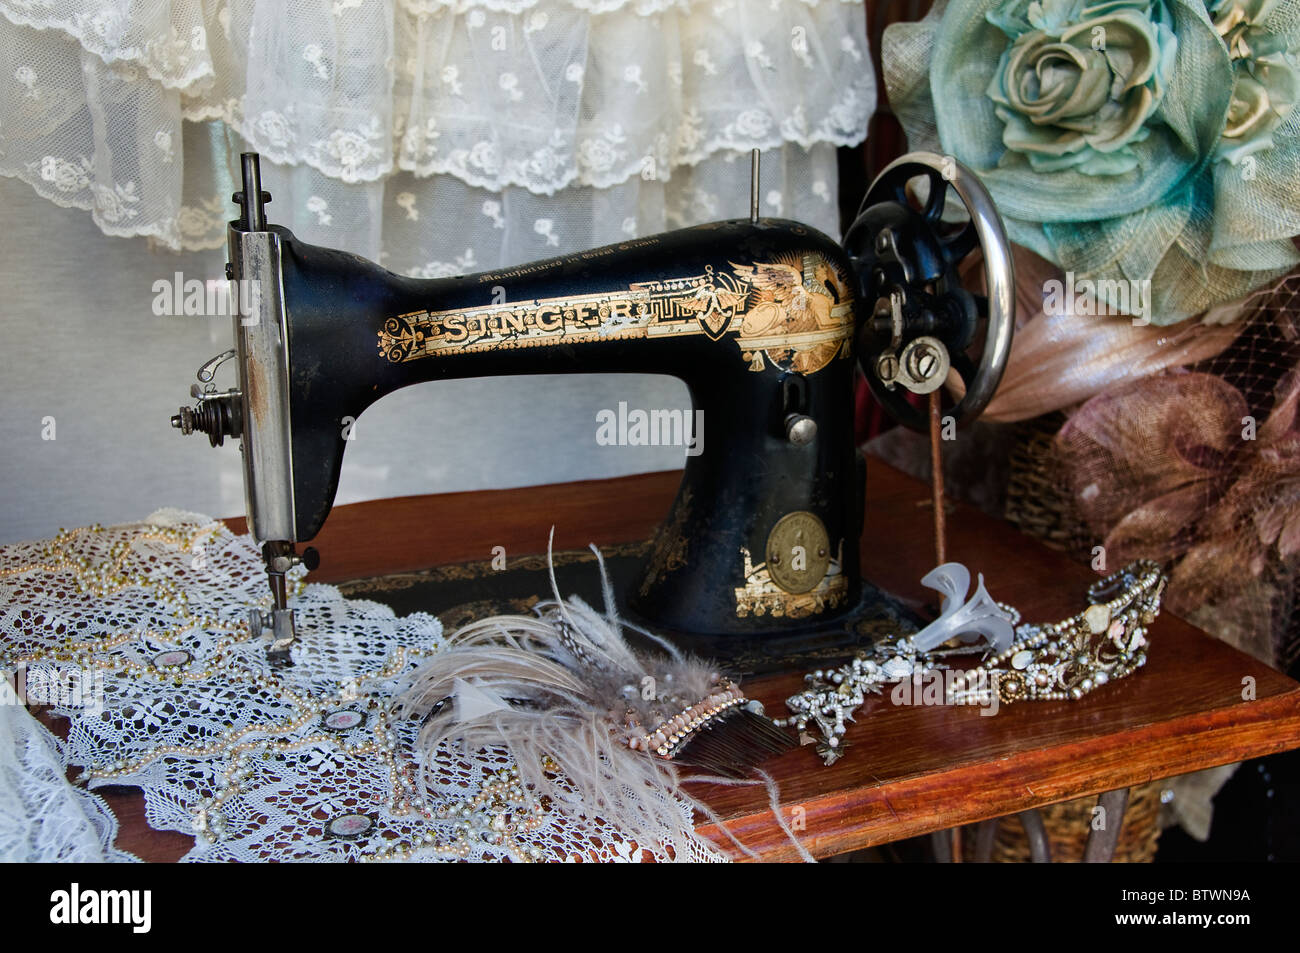 Séville Espagne chanteuse allemande vêtement sur mesure couture coudre sewing machine Banque D'Images